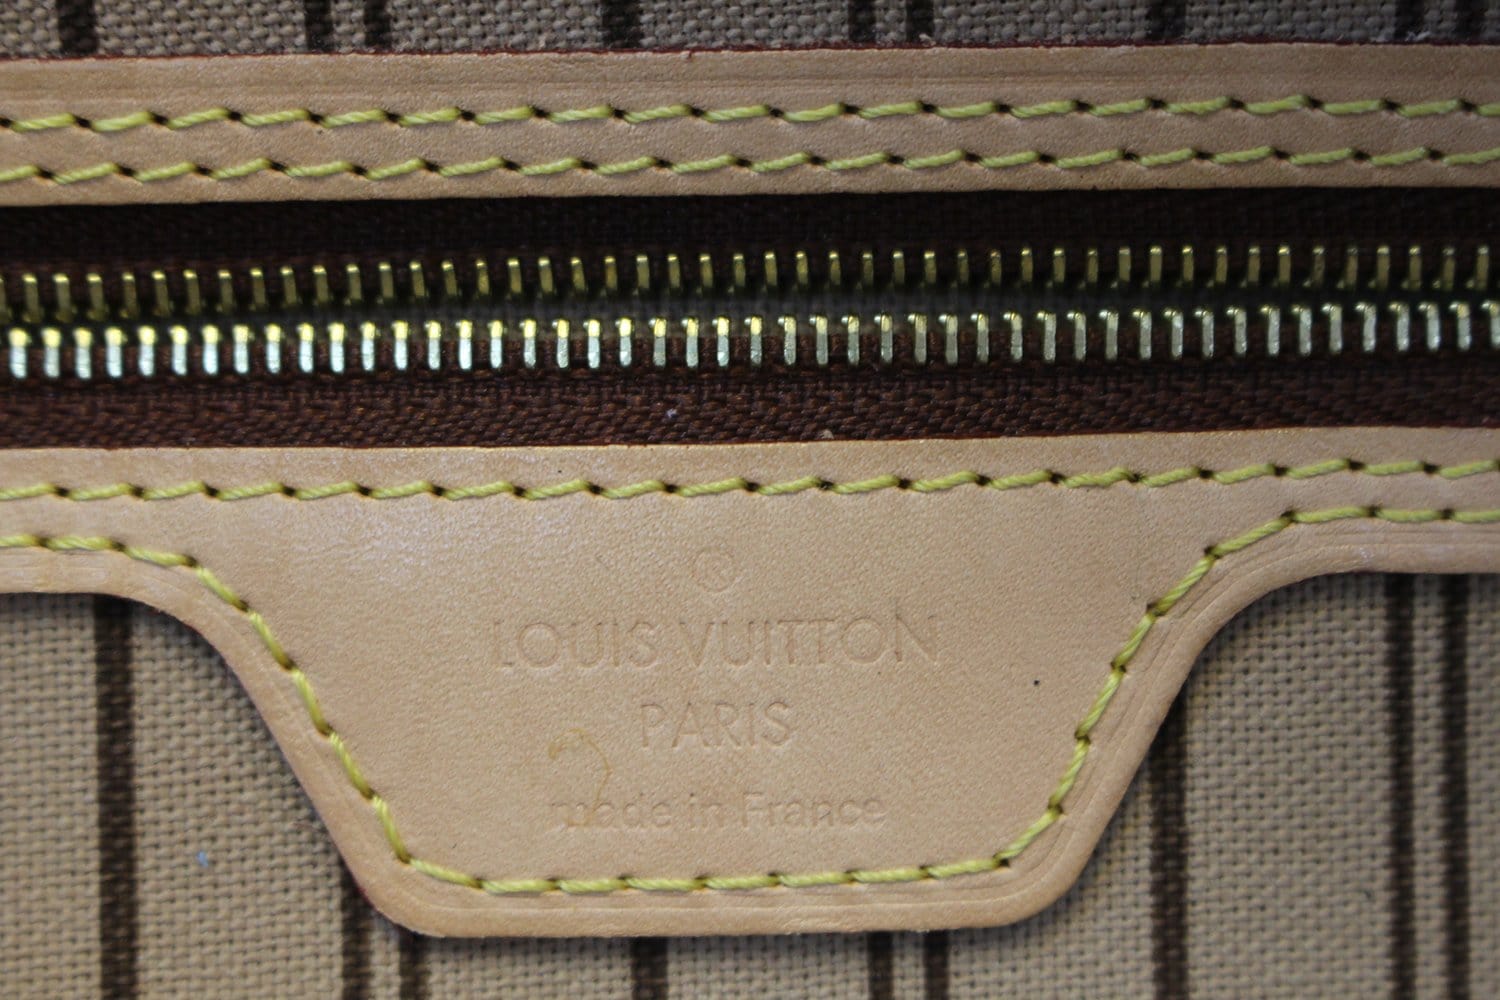 LOUIS VUITTON Monogram Delightful PM NM Shoulder Bag